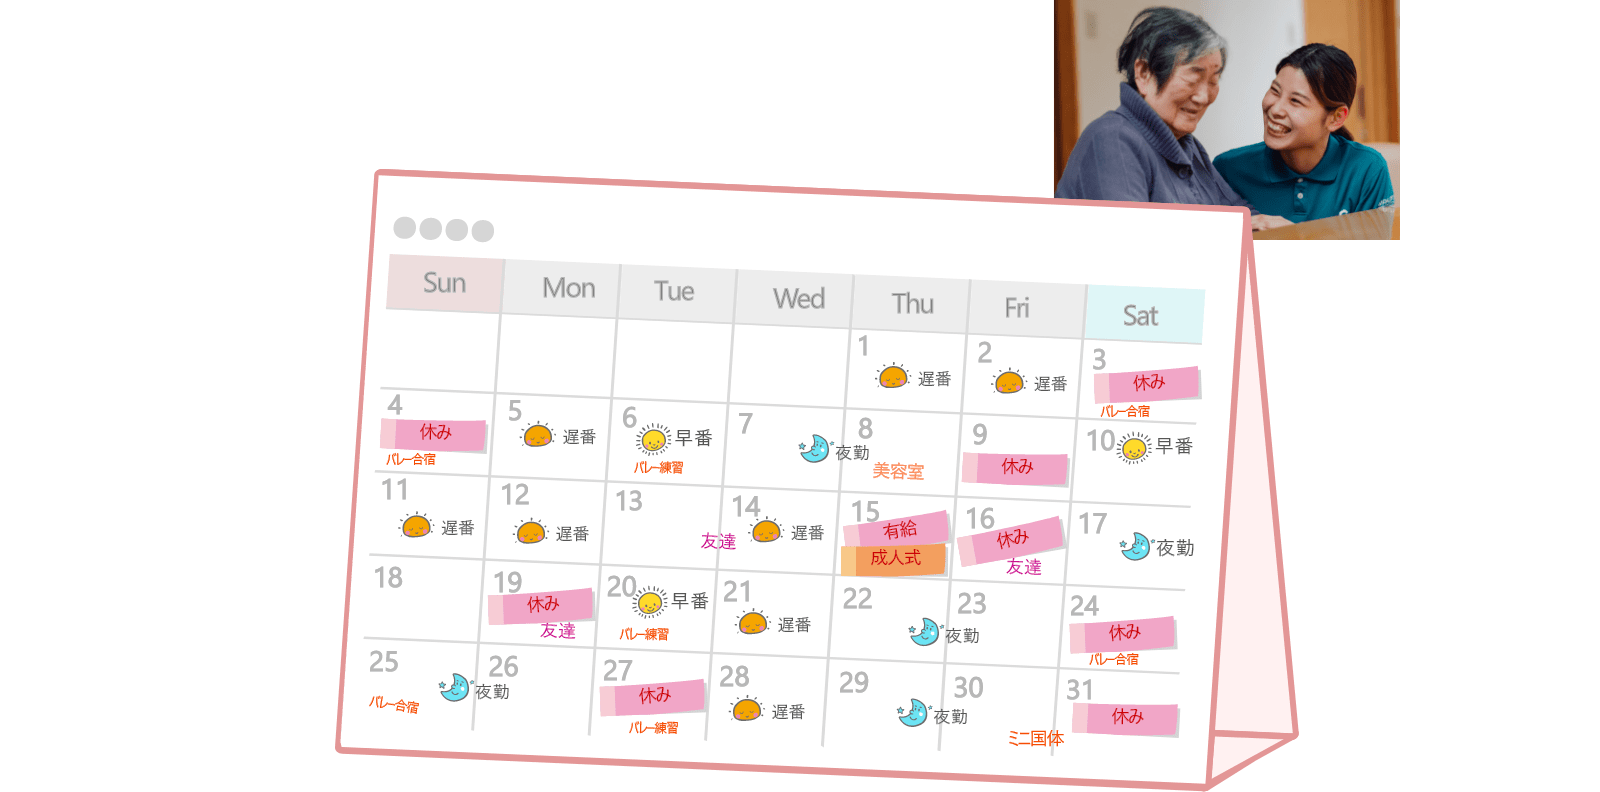 髙瀬さんの月間カレンダー